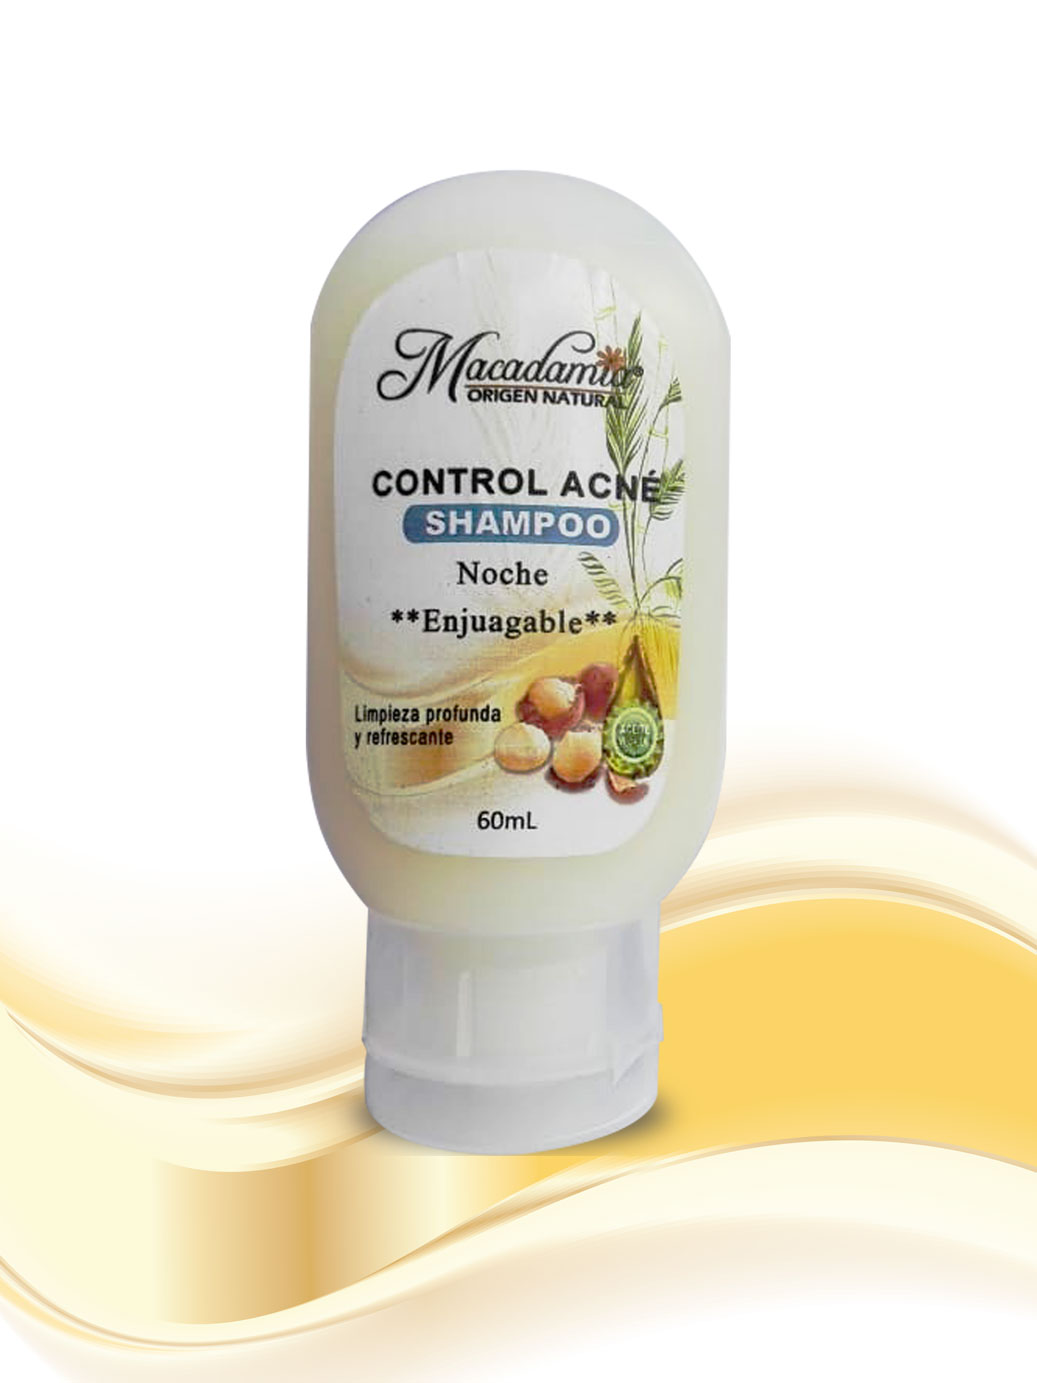 Shampoo control Acné con Aceite de Macadamia y árbol de Te, limpia profundamente controlando el Acné